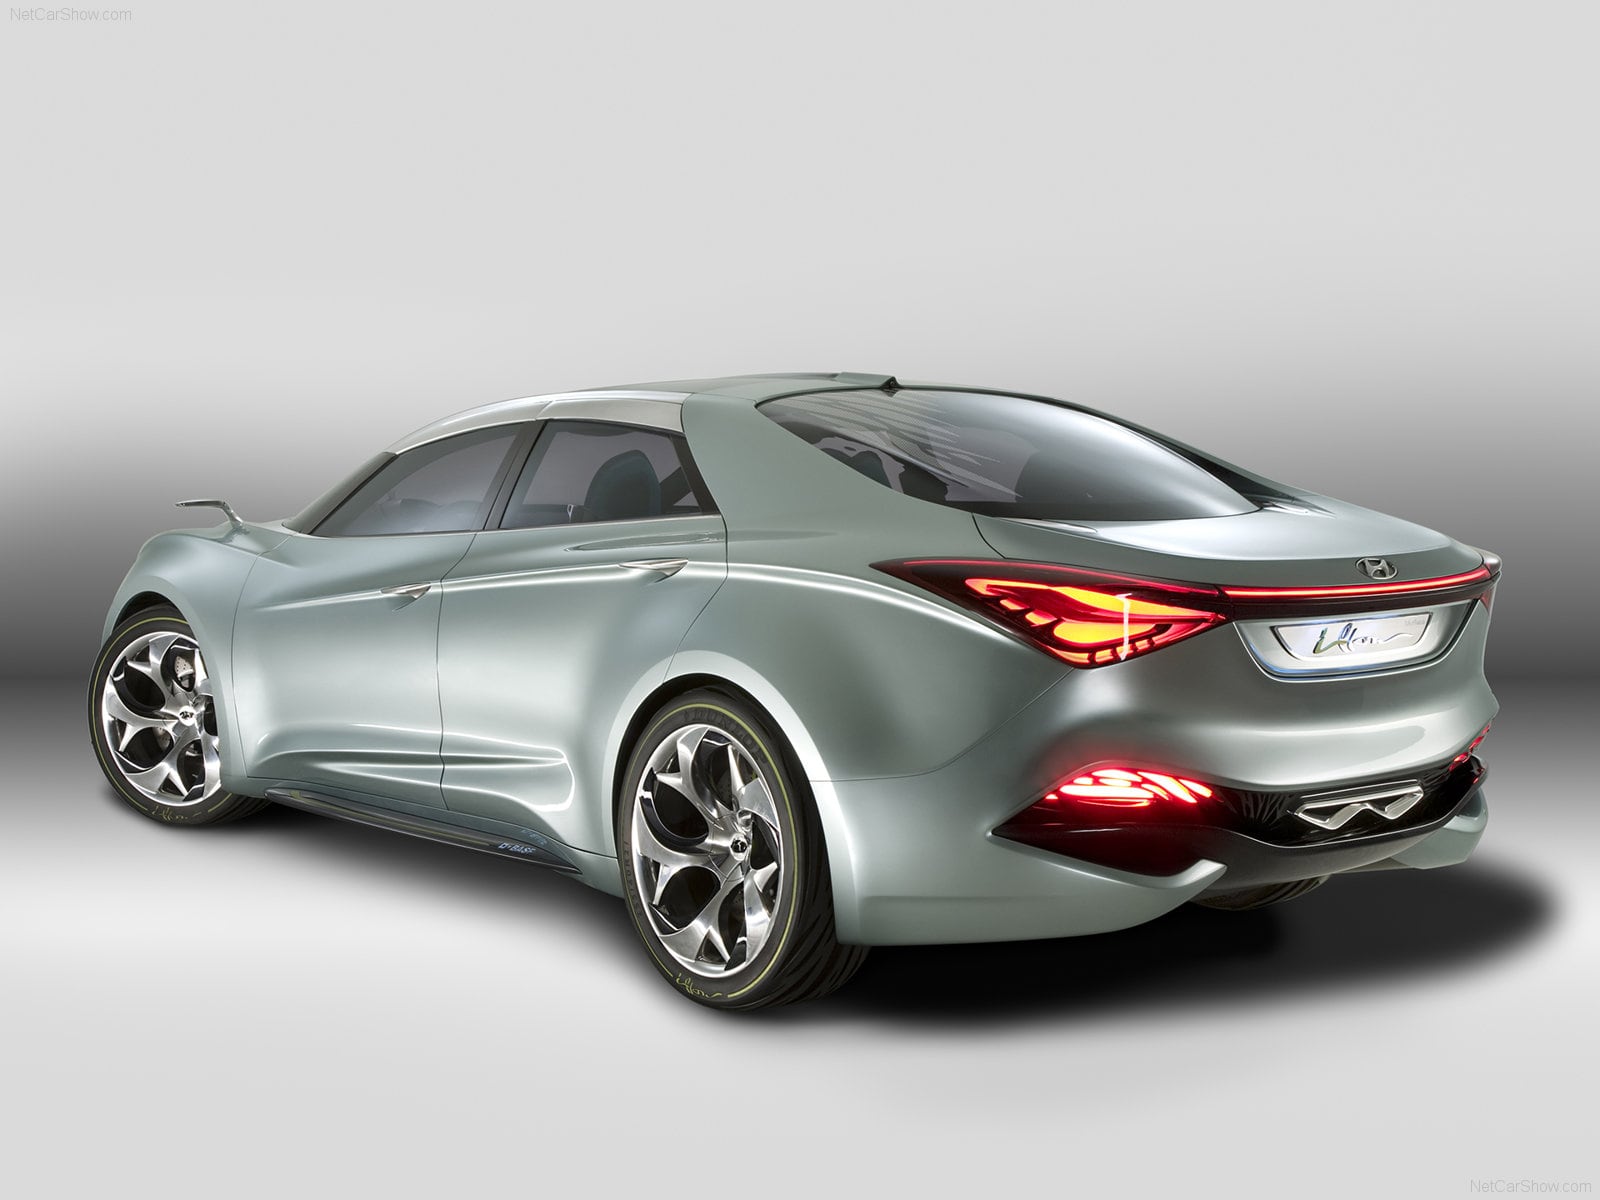 030310_Hyundai представила новый концепт i-flow на международном автосалоне в Женеве